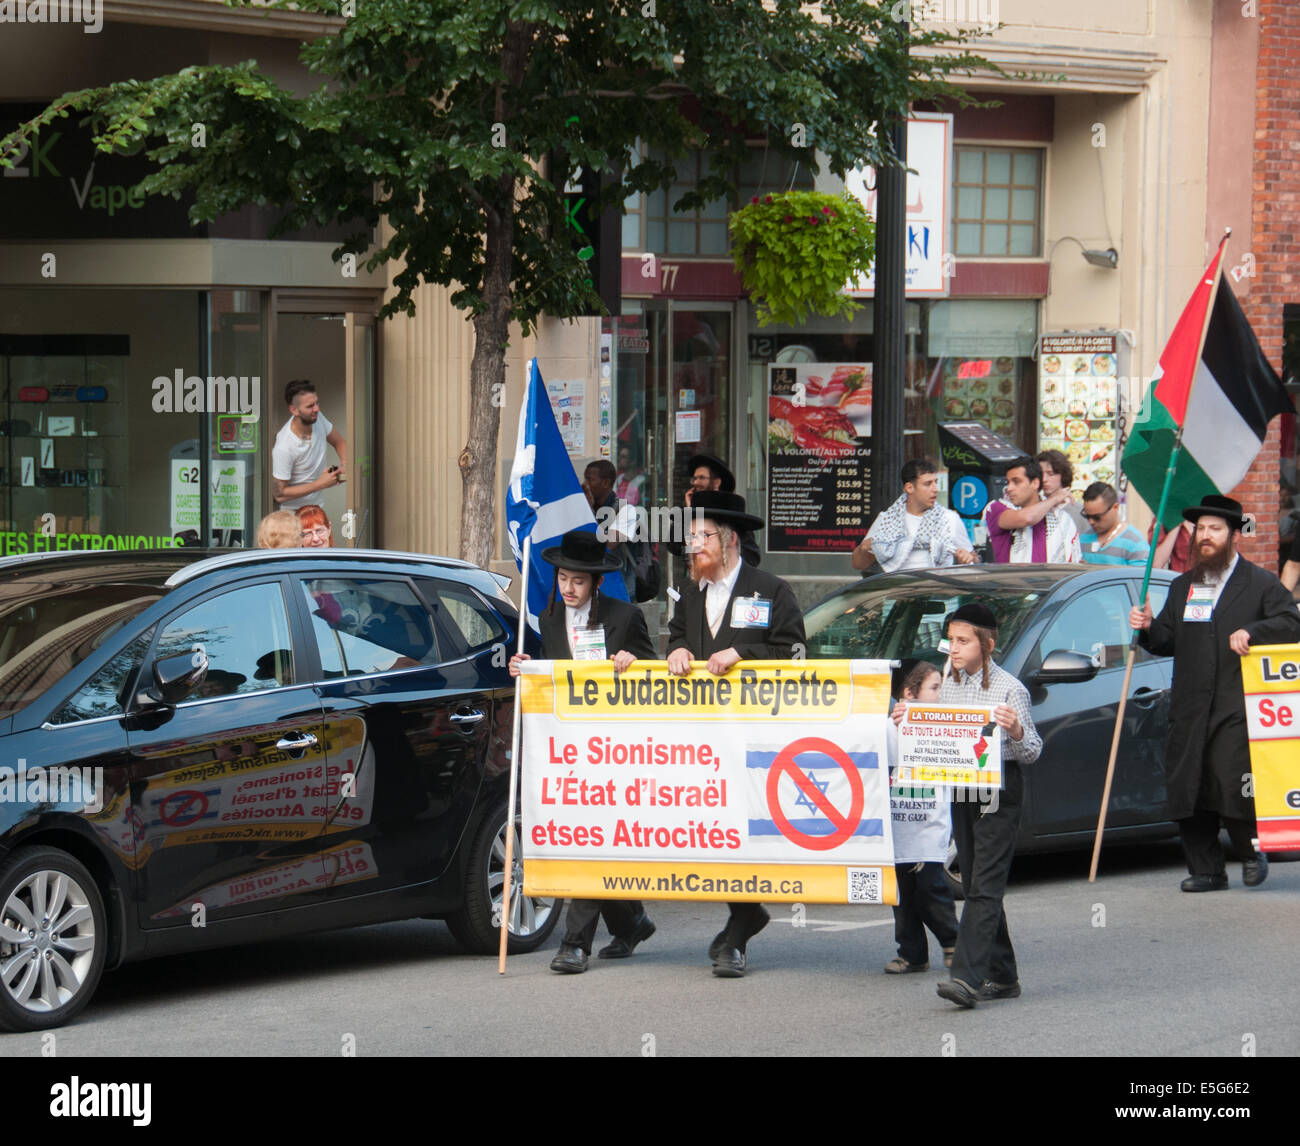 Montreal, Kanada. 30. Juli 2014. Ward nahm auf die Straße zu protestieren gegen die kontinuierliche Bombardierung des Gazastreifens, die in einer wachsenden Zahl von palästinensischen zivilen Casulaties resultiert. Bildnachweis: Megapress/Alamy Live-Nachrichten Stockfoto